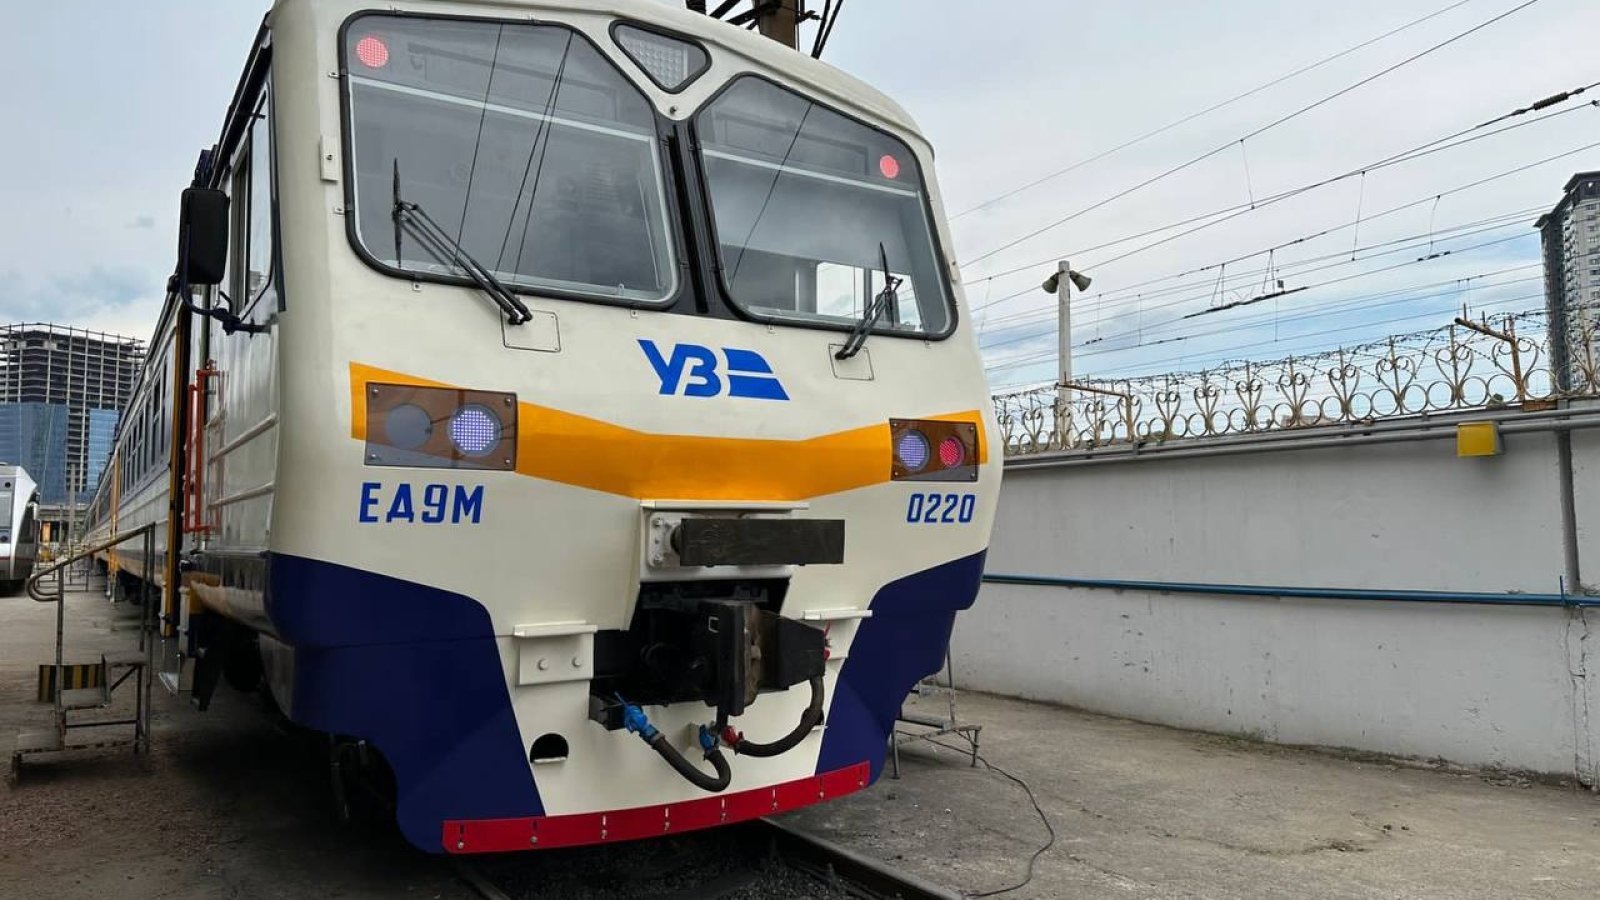 Укрзалізниця планує придбати сучасні електровози за фінансування ЄБРР